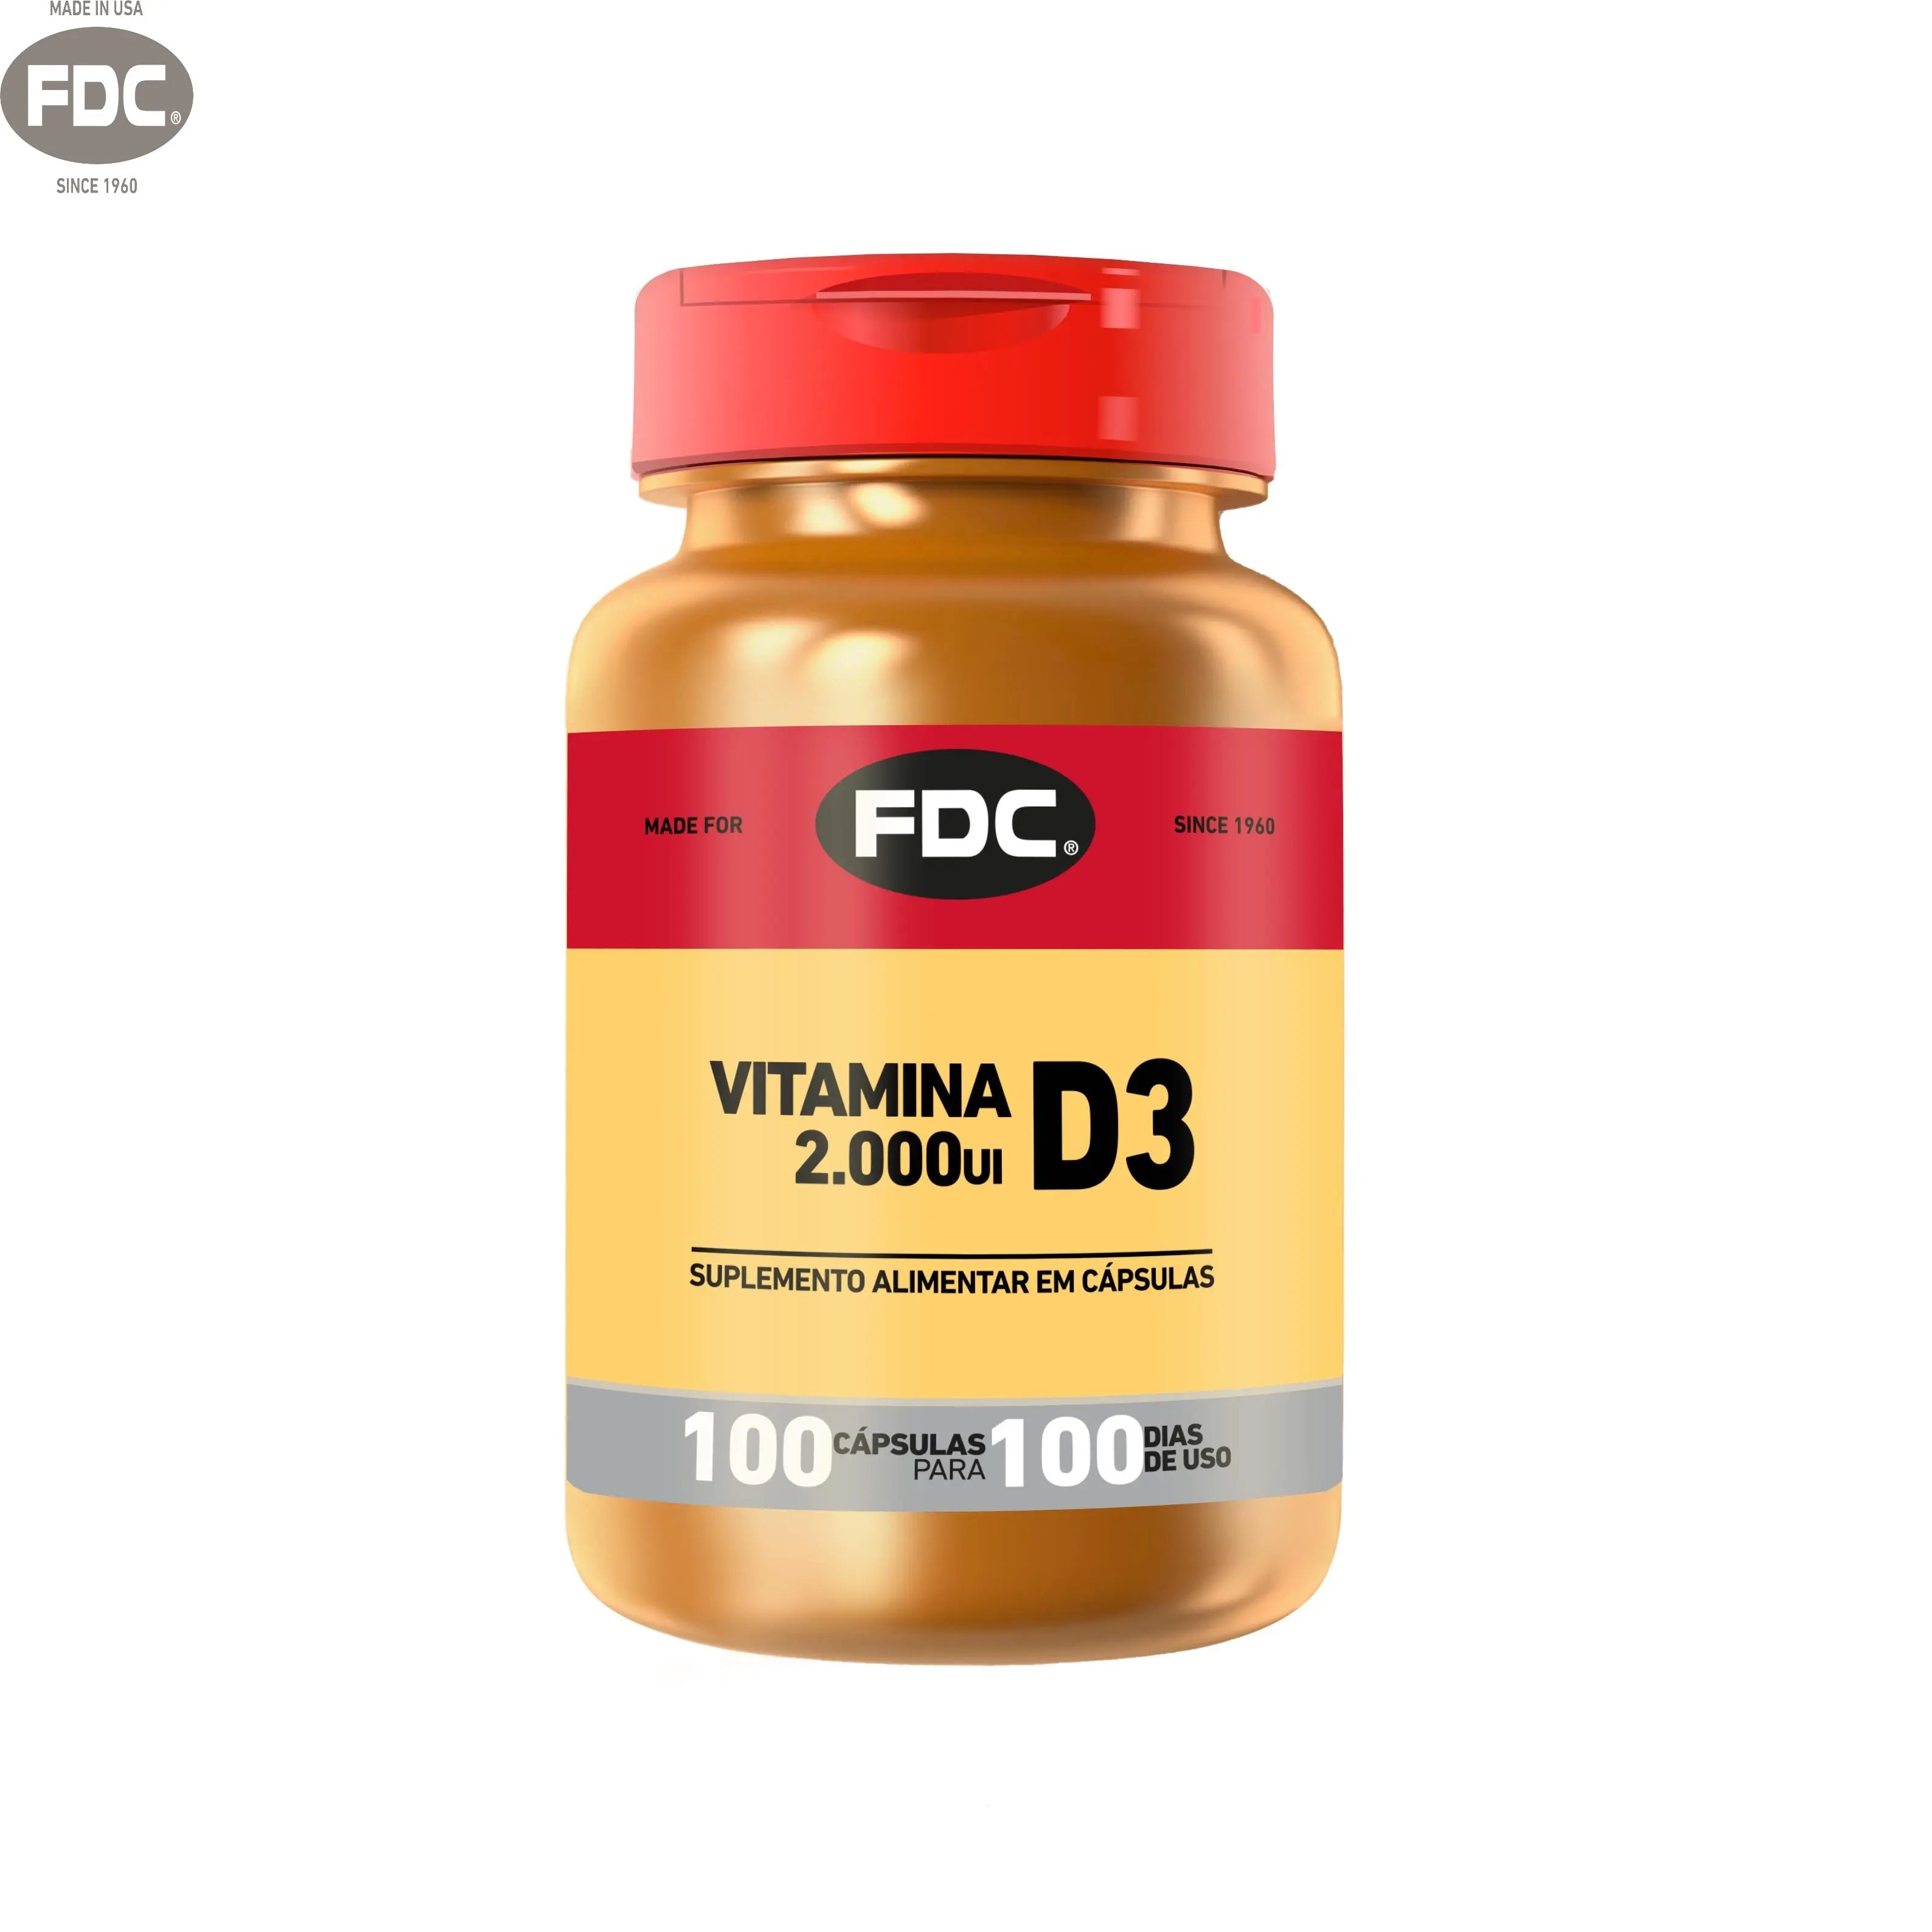 Produto FDC: Vitamina D3 2000 UI - FDC Vitaminas - Vitaminas com duplo certificado de qualidade.